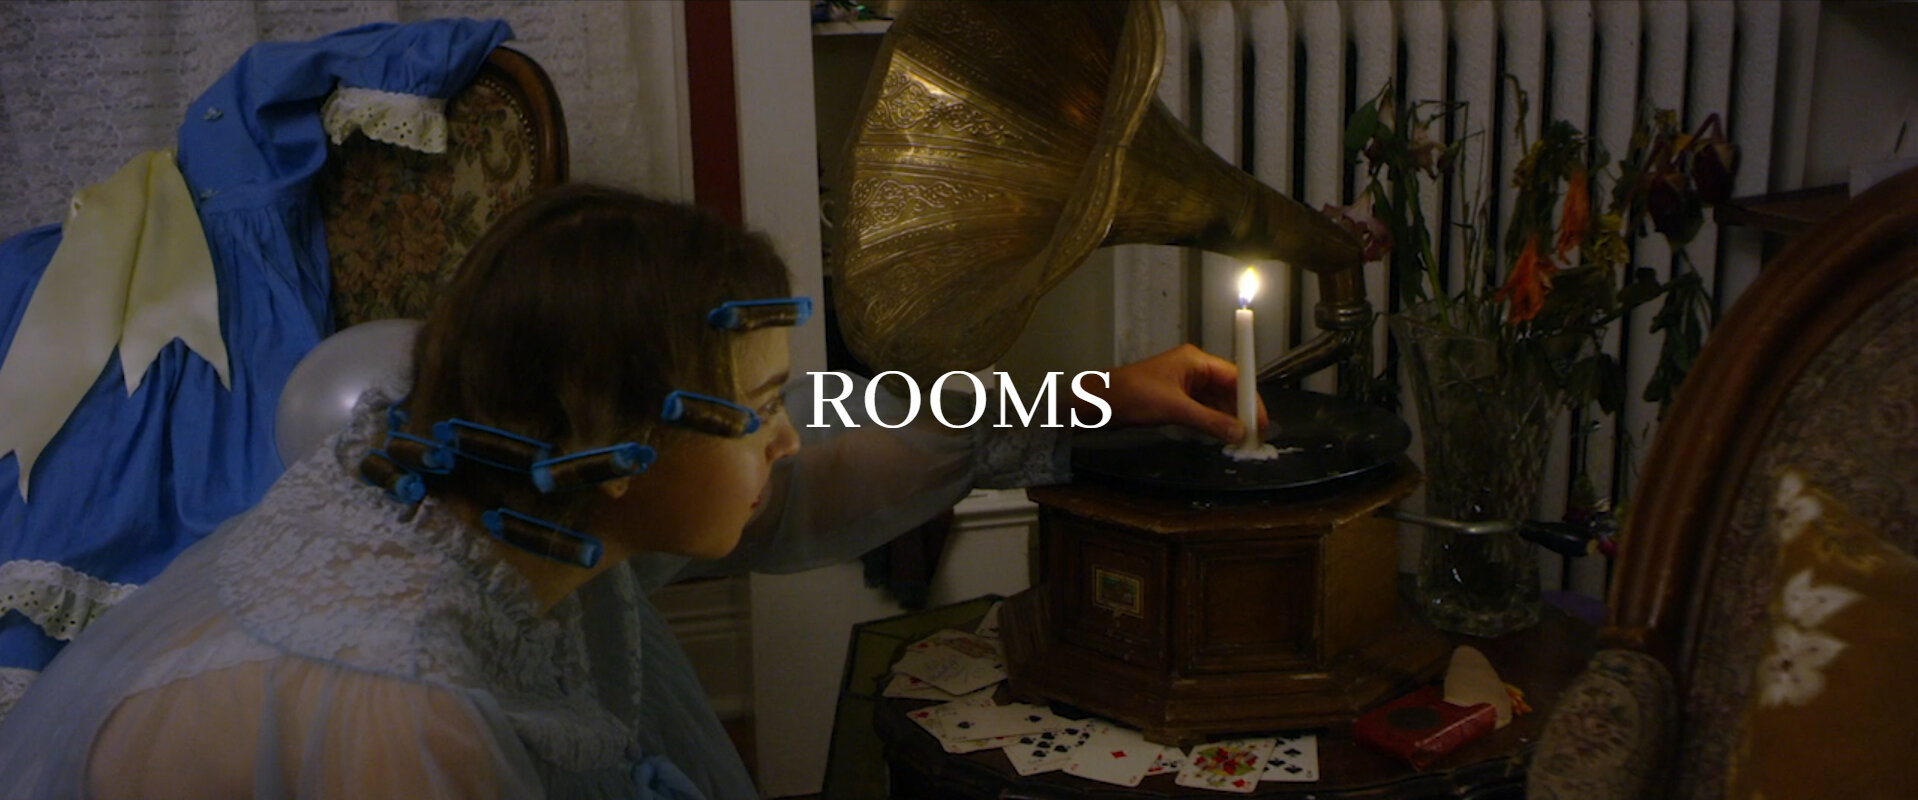 Rooms - Short Film